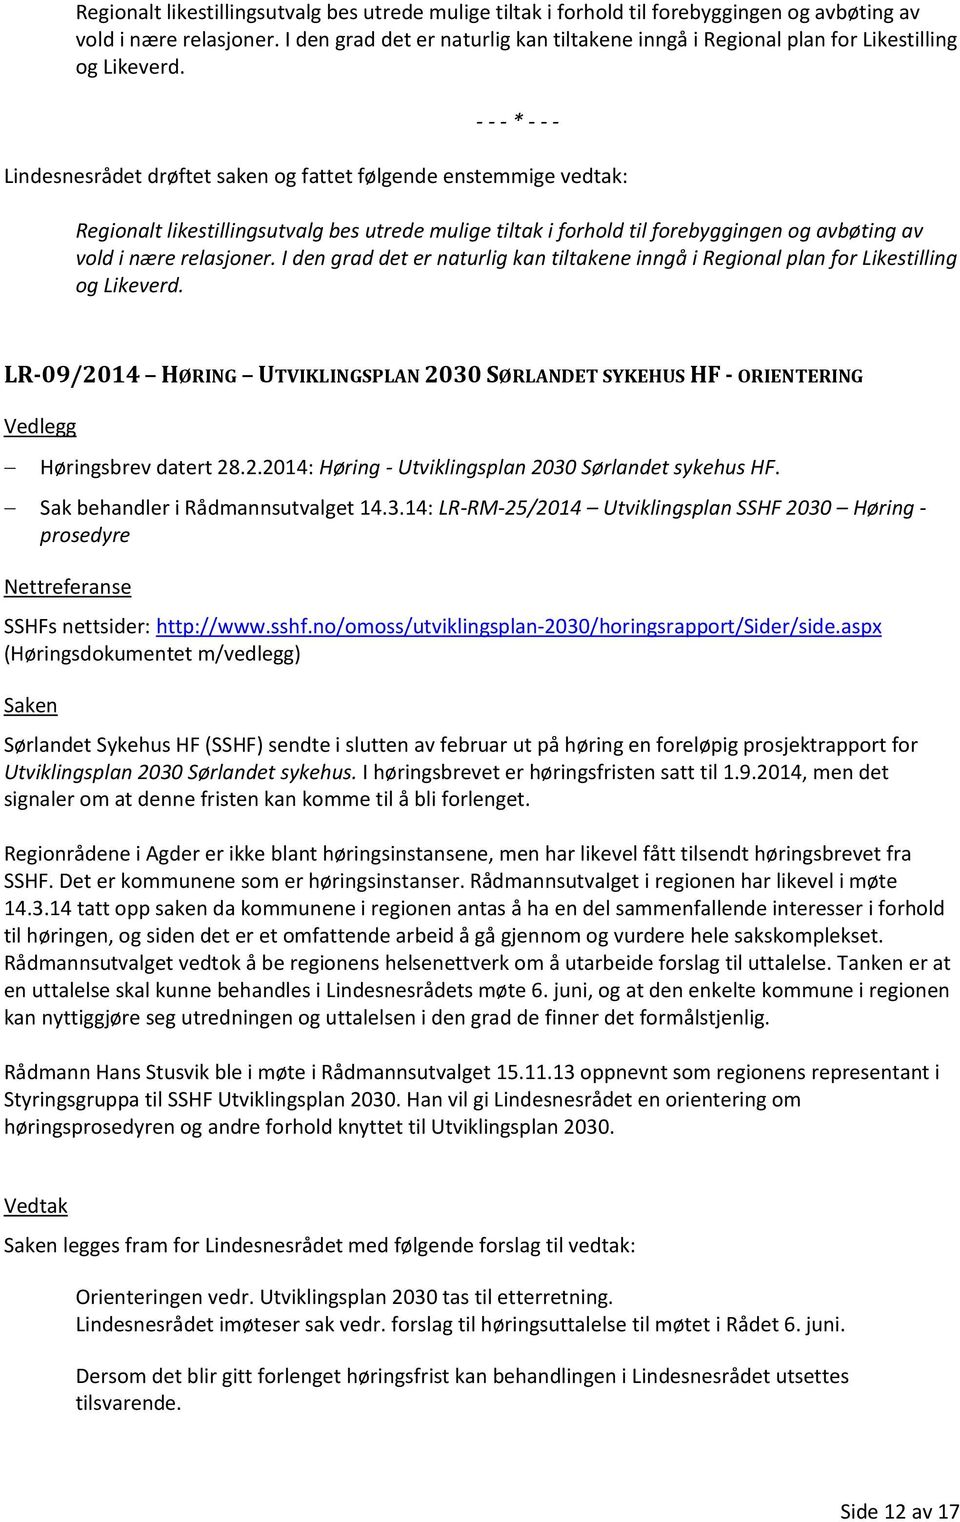 Lindesnesrådet drøftet saken og fattet følgende enstemmige vedtak:   LR-09/2014 HØRING UTVIKLINGSPLAN 2030 SØRLANDET SYKEHUS HF - ORIENTERING Høringsbrev datert 28.2.2014: Høring - Utviklingsplan 2030 Sørlandet sykehus HF.